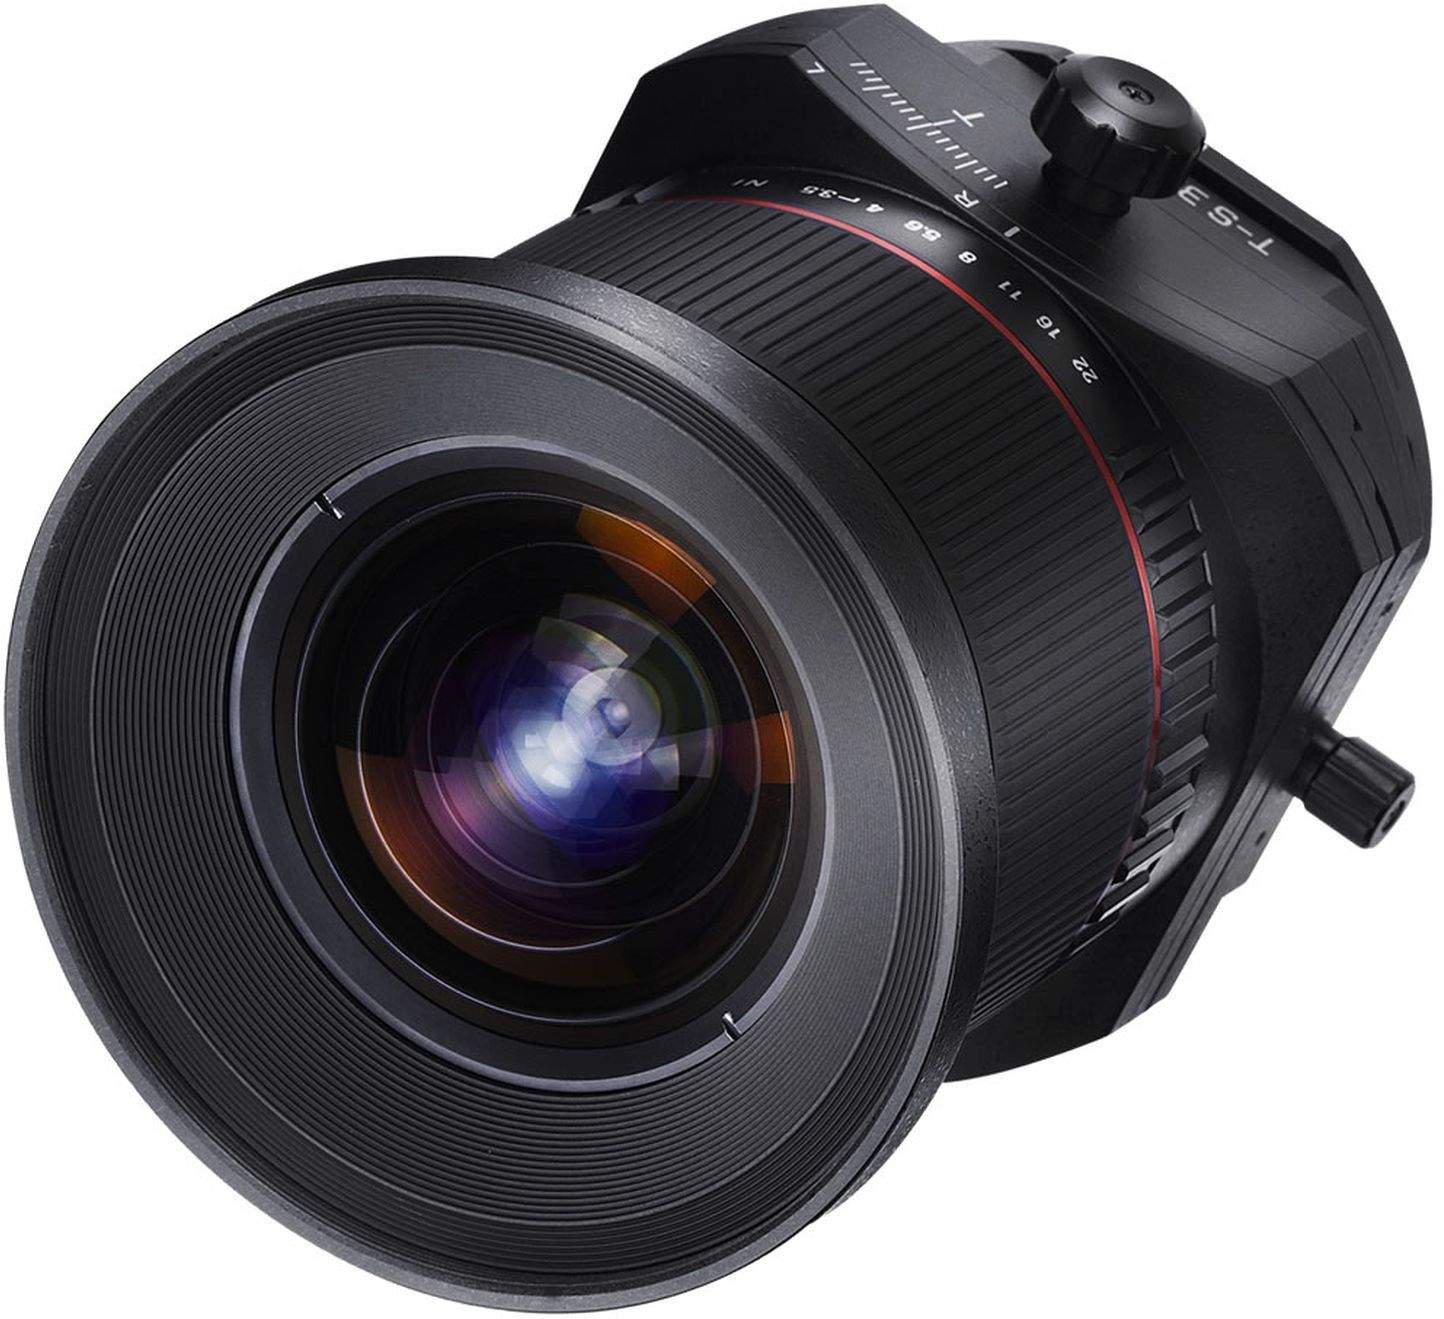 Samyang 24mm F3.5 Tilt & Shift ED AS UMC Nikon AE Full Frame Camera Lens